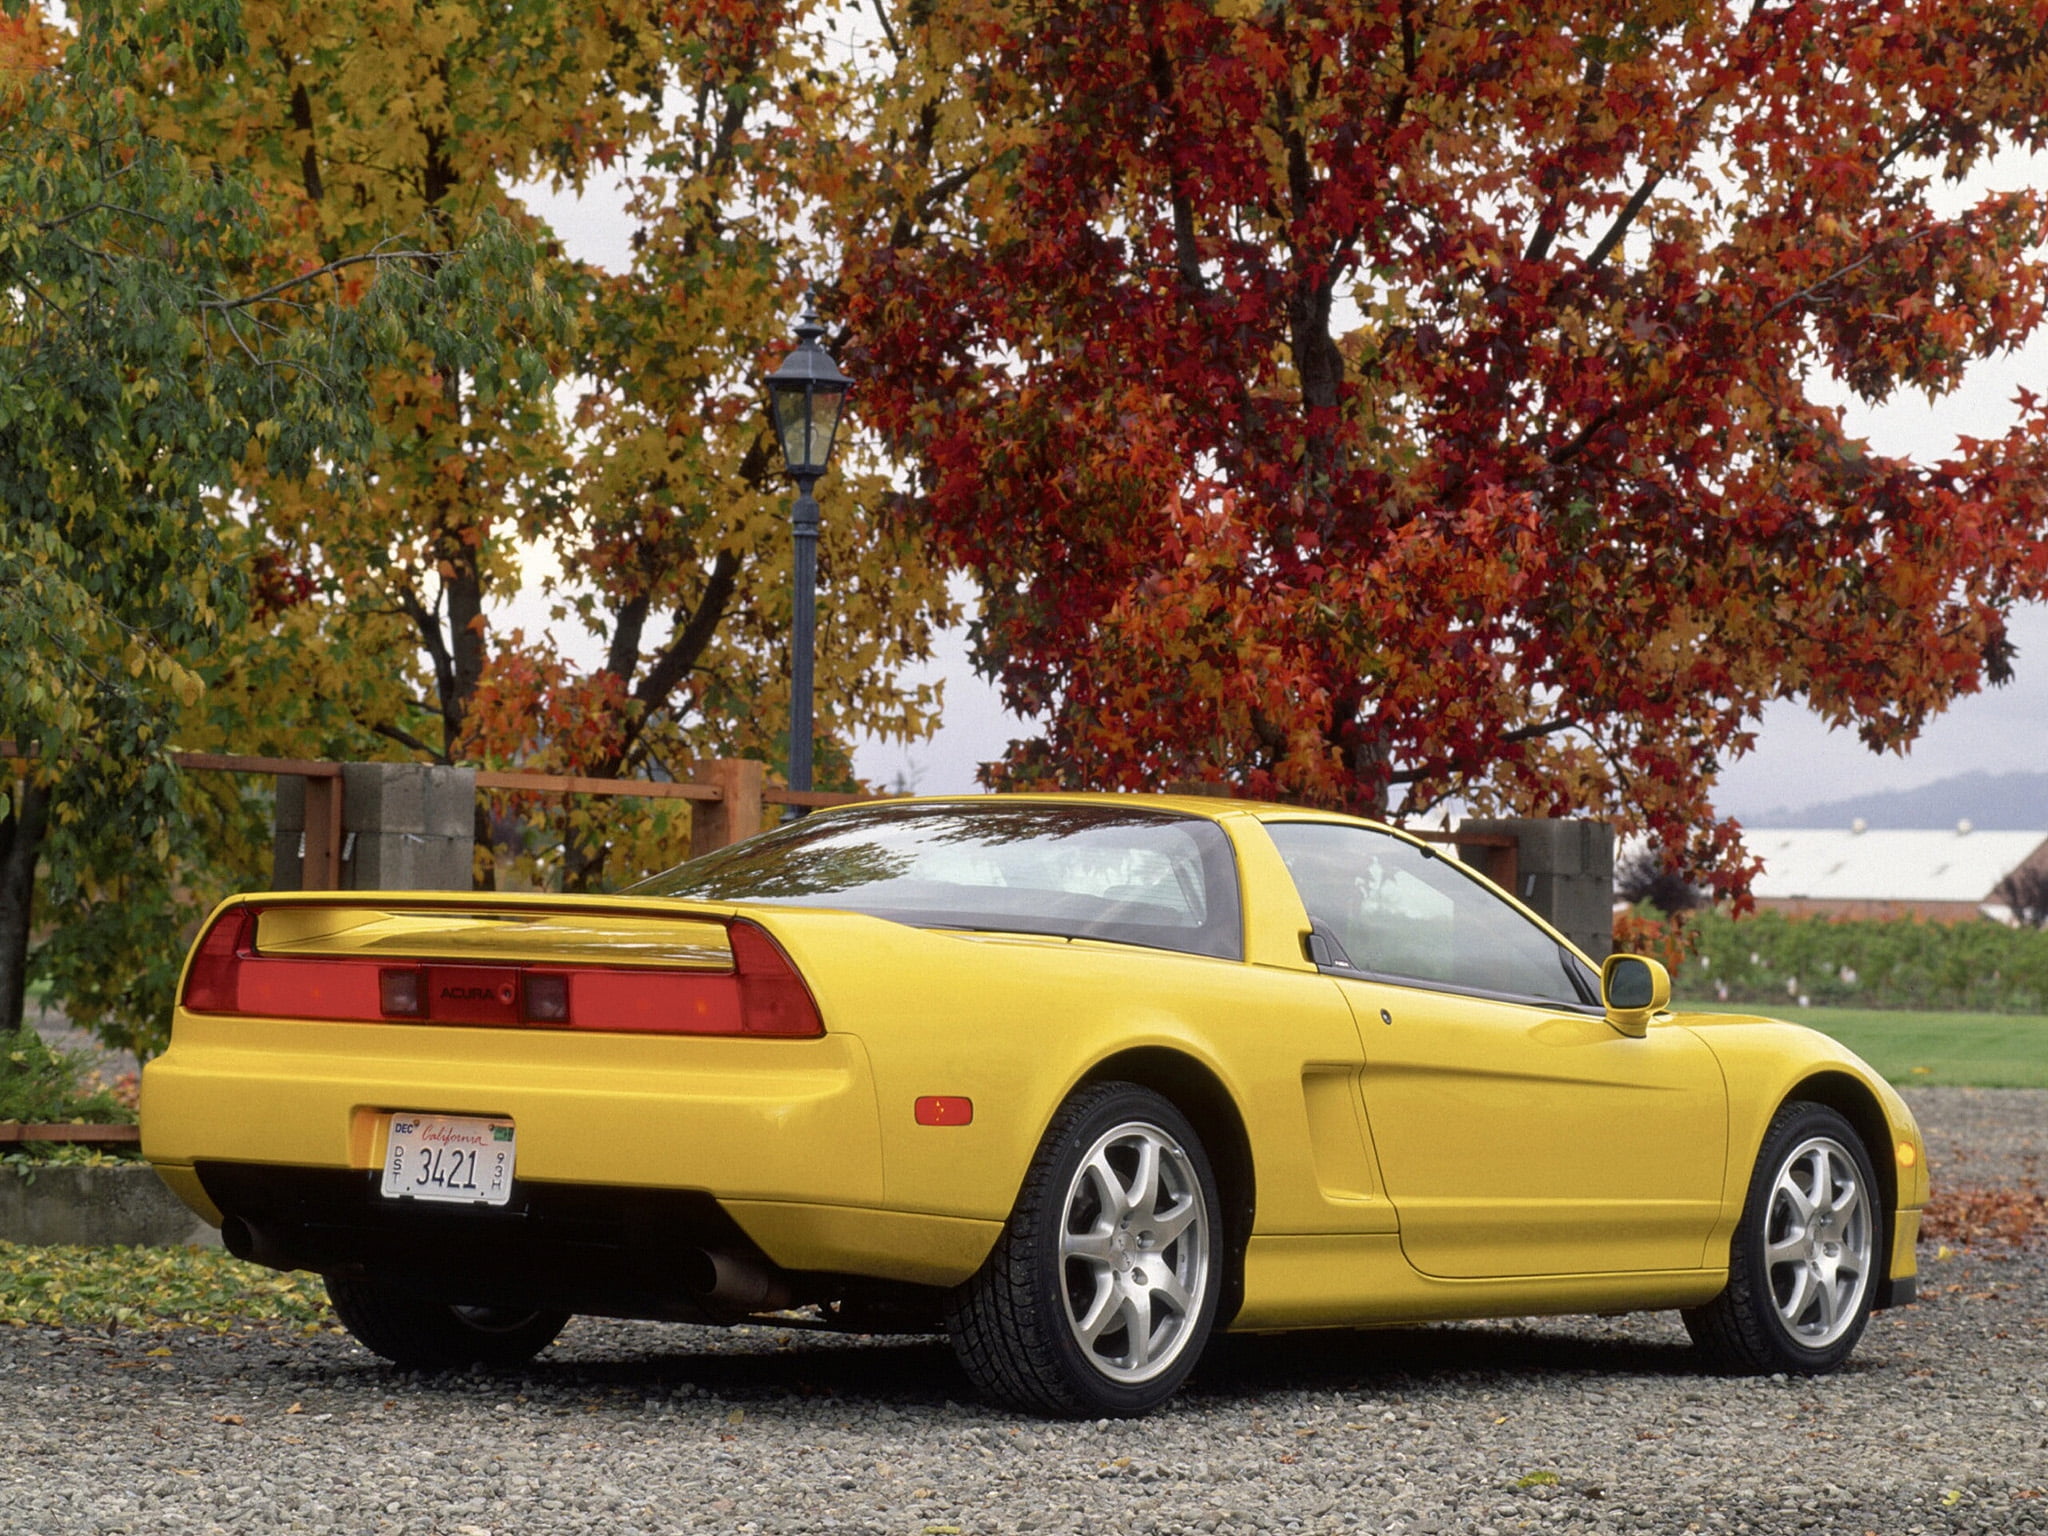 yellow Chevrolet Corvette C5 parked on grey gravel